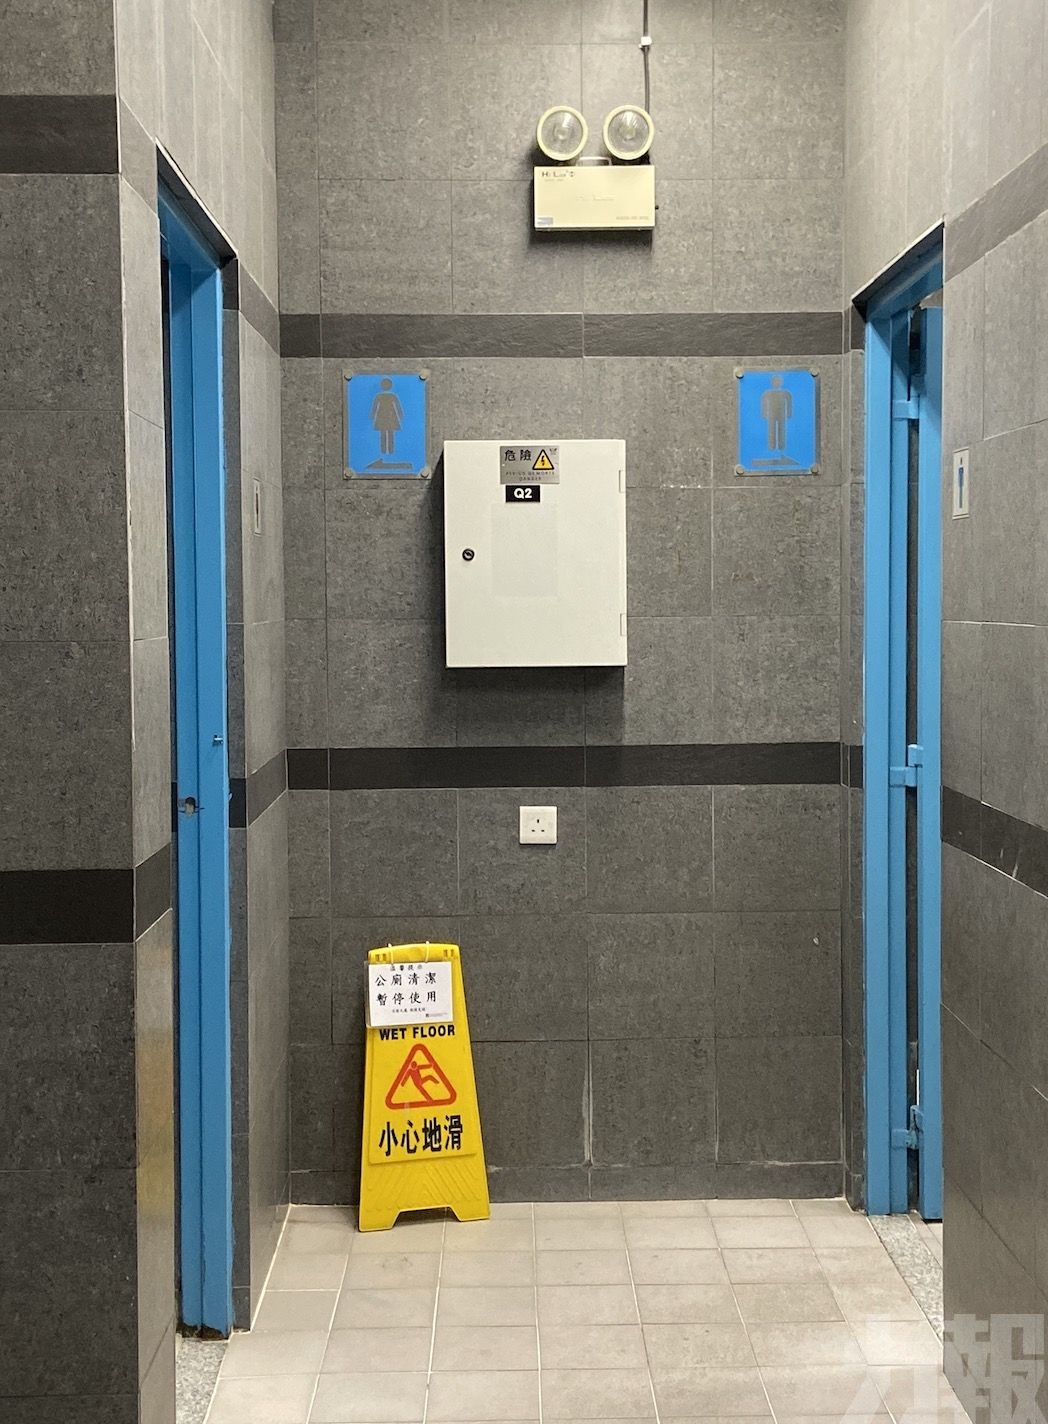 本澳新建公廁男女廁格比例為1:2